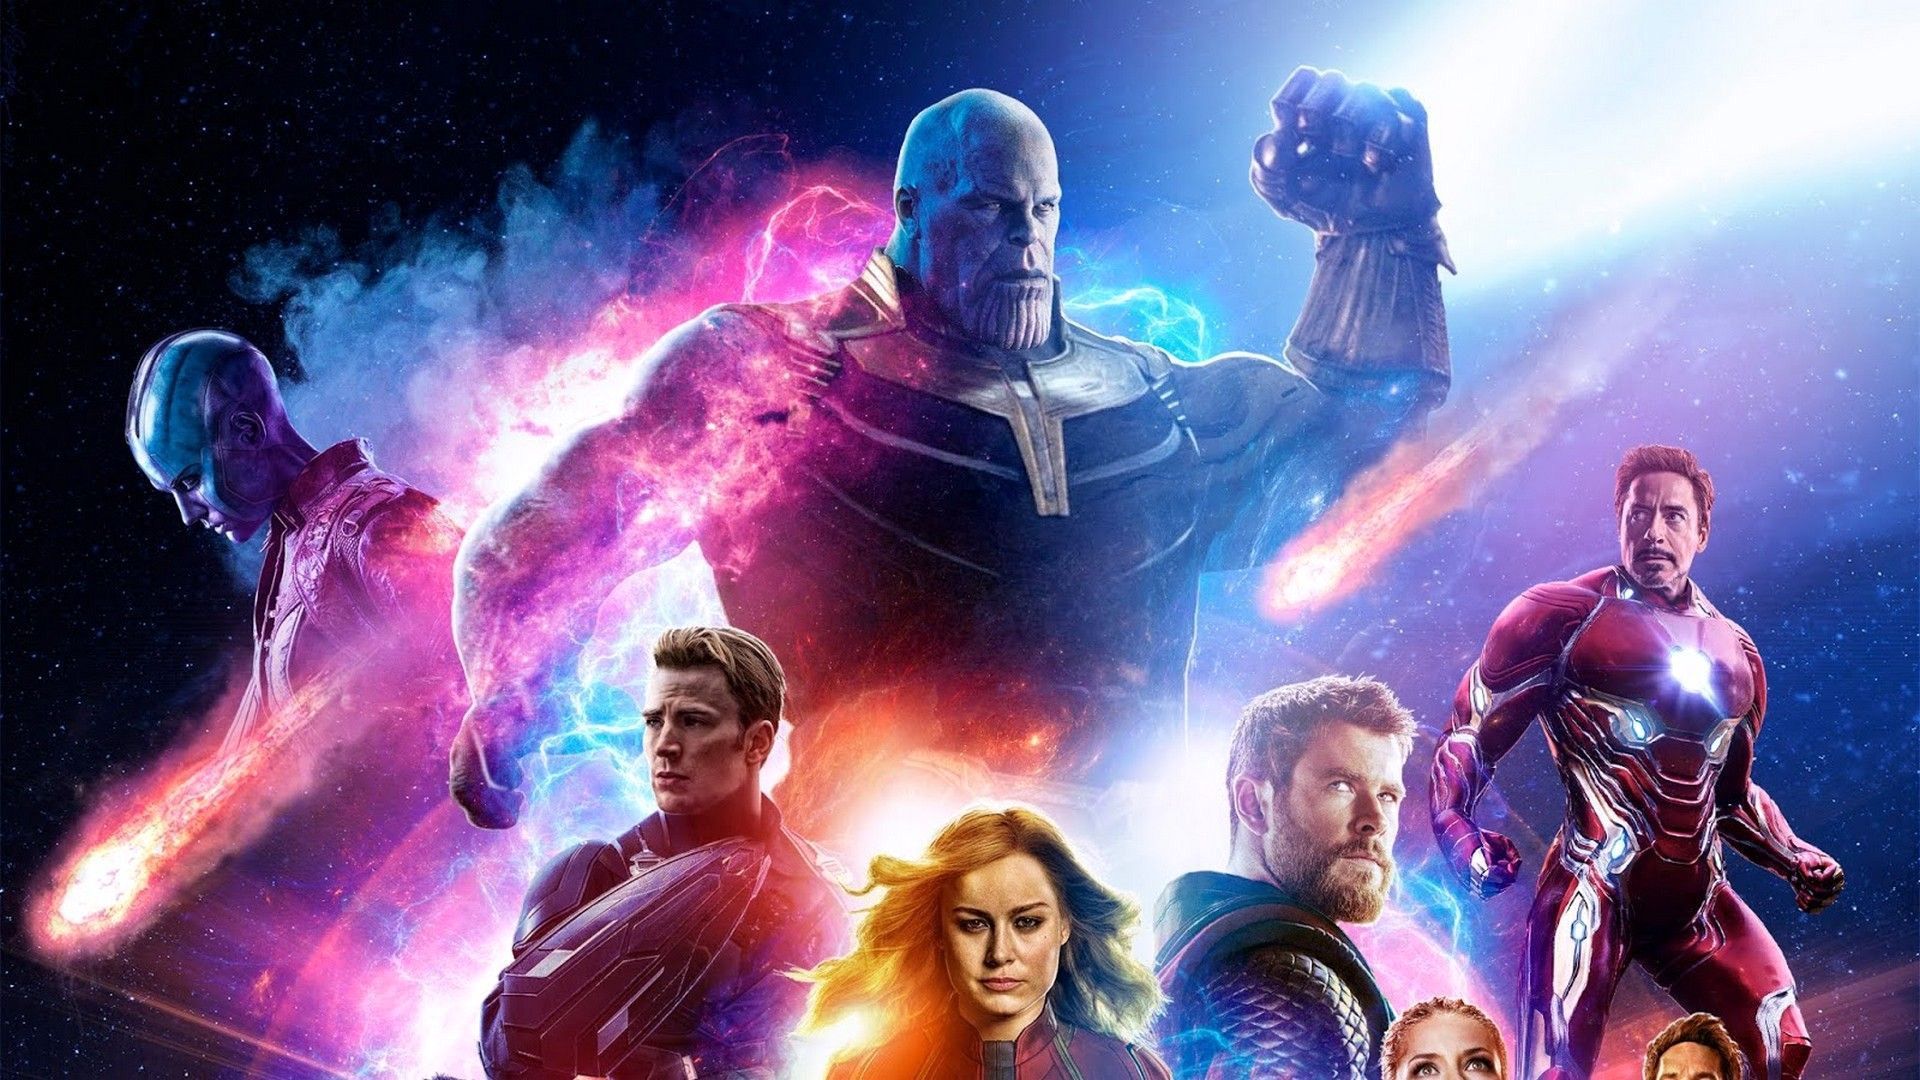 Download Captain Marvel Wallpaper Awesome Avengers Endgame 2019